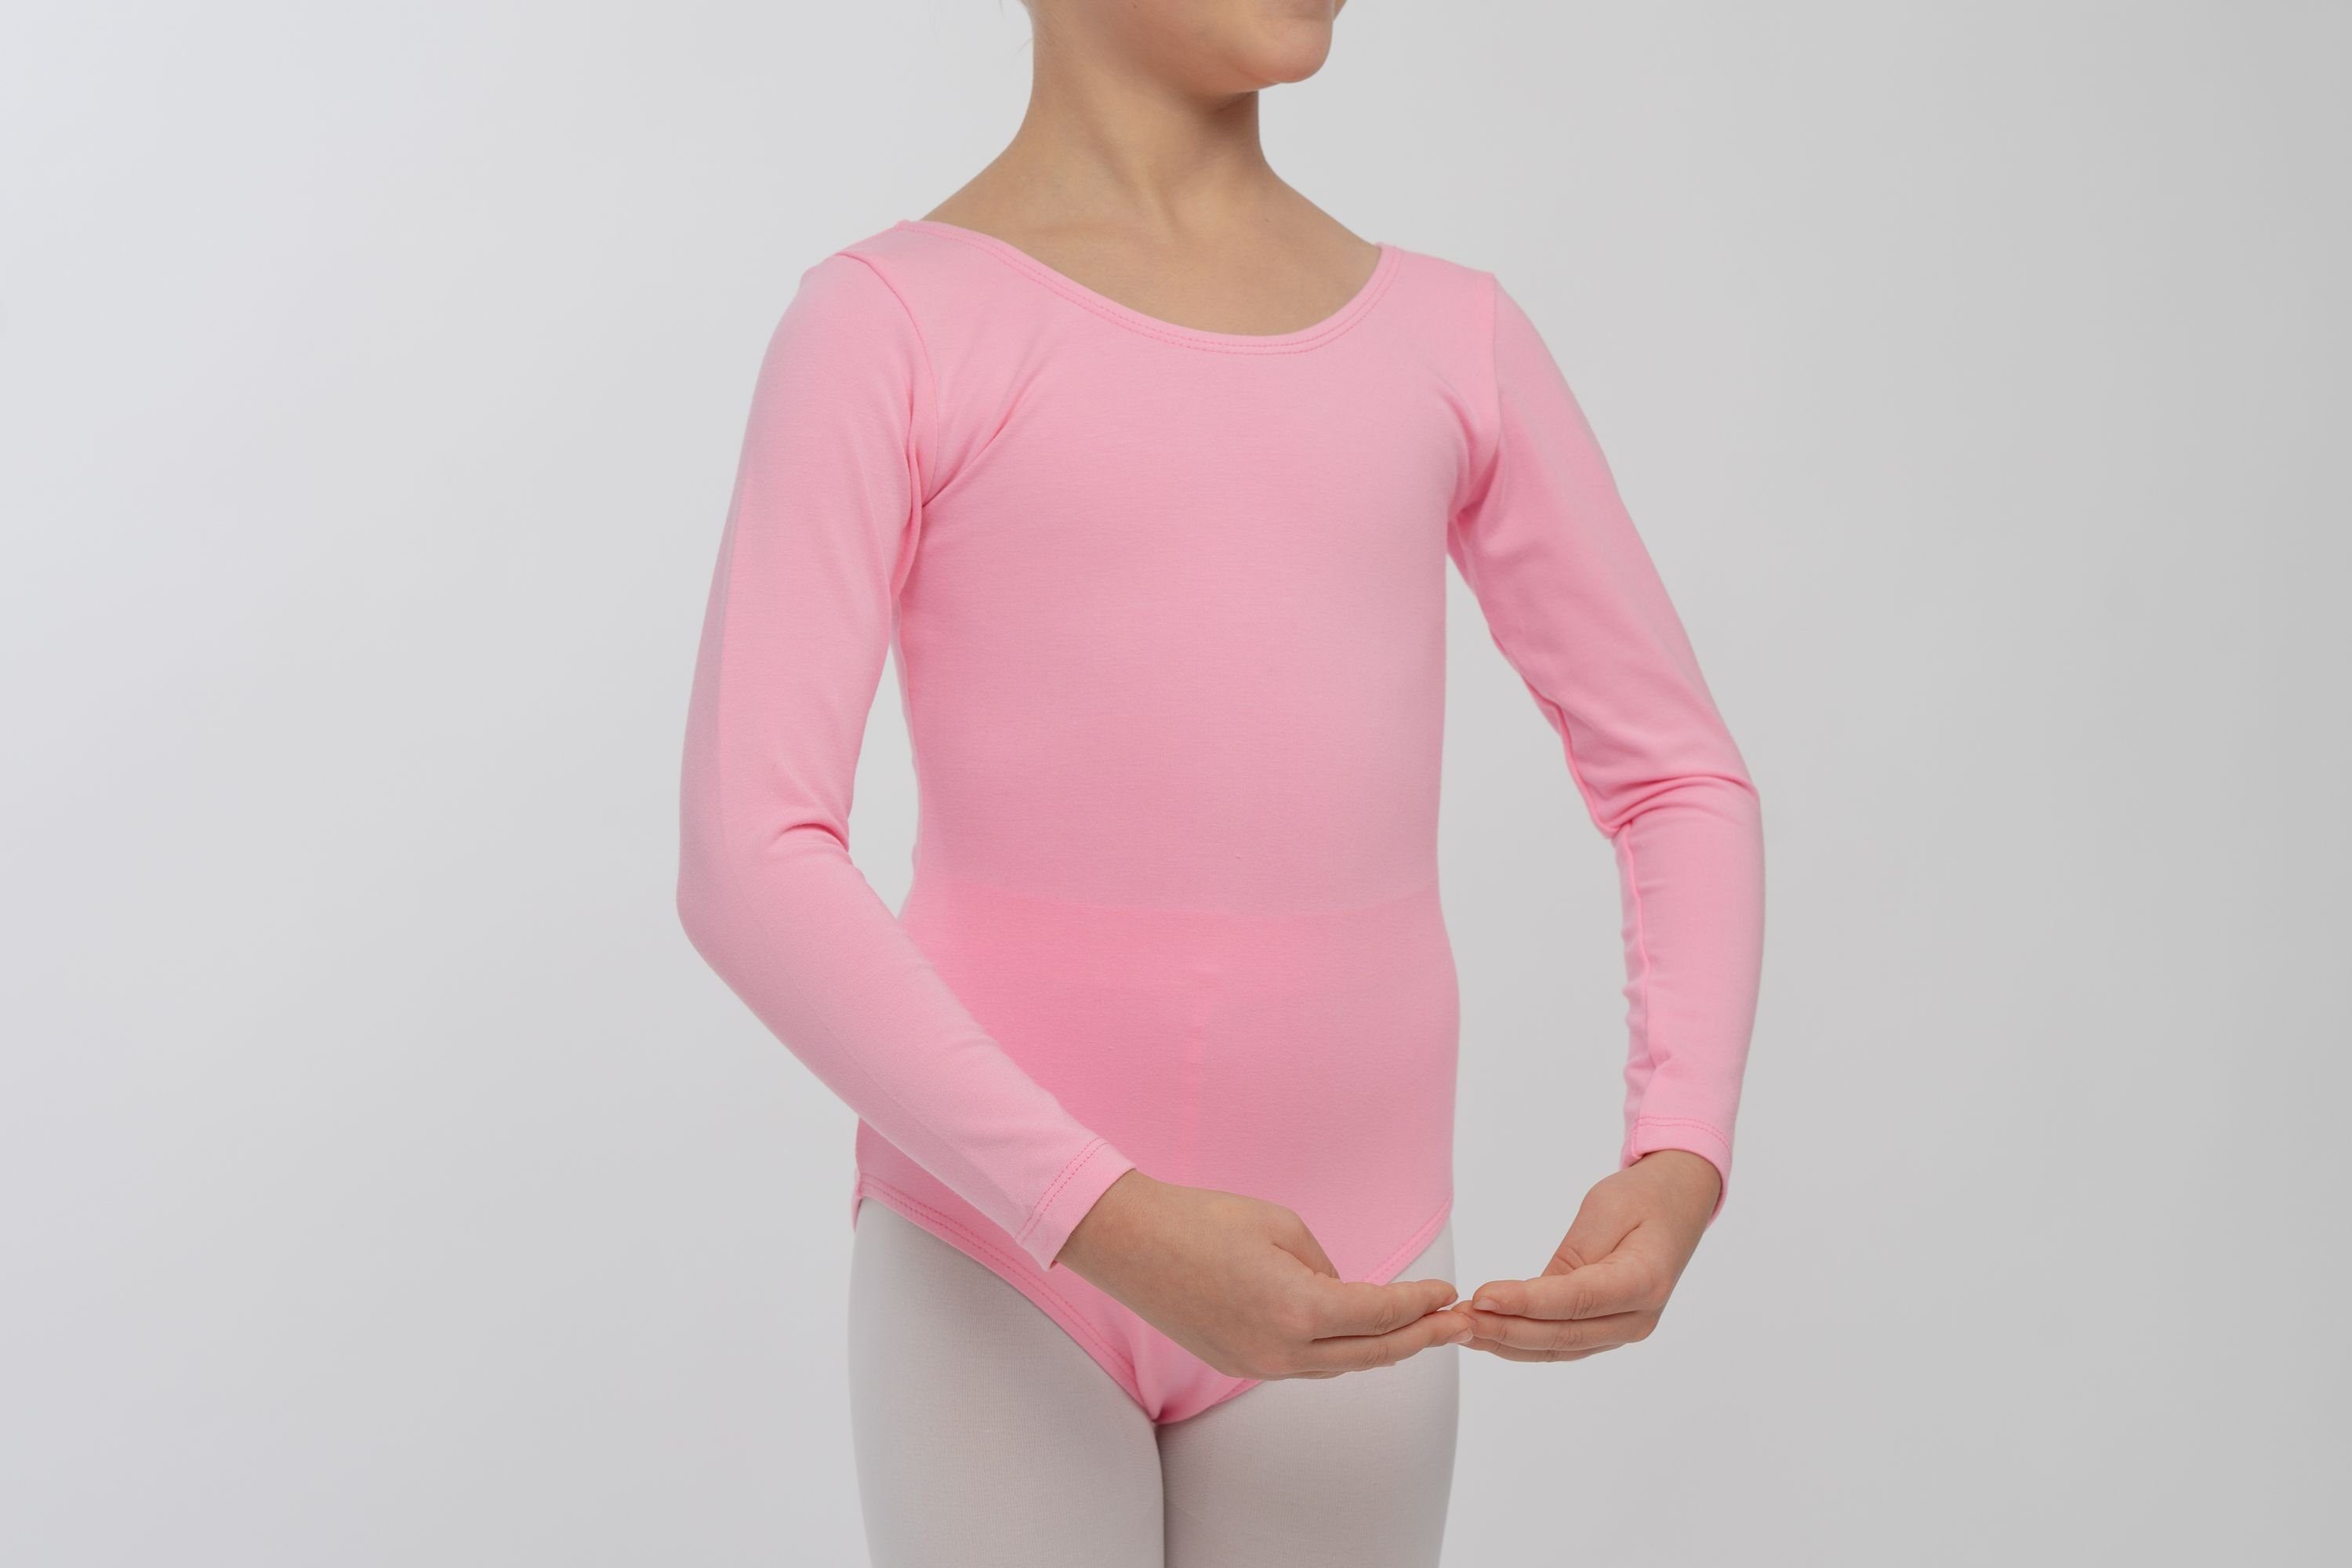 Ballettbody Kinder aus Trikot Baumwollmischgewebe Lilly Langarm rosa weichem Body tanzmuster fürs Ballett